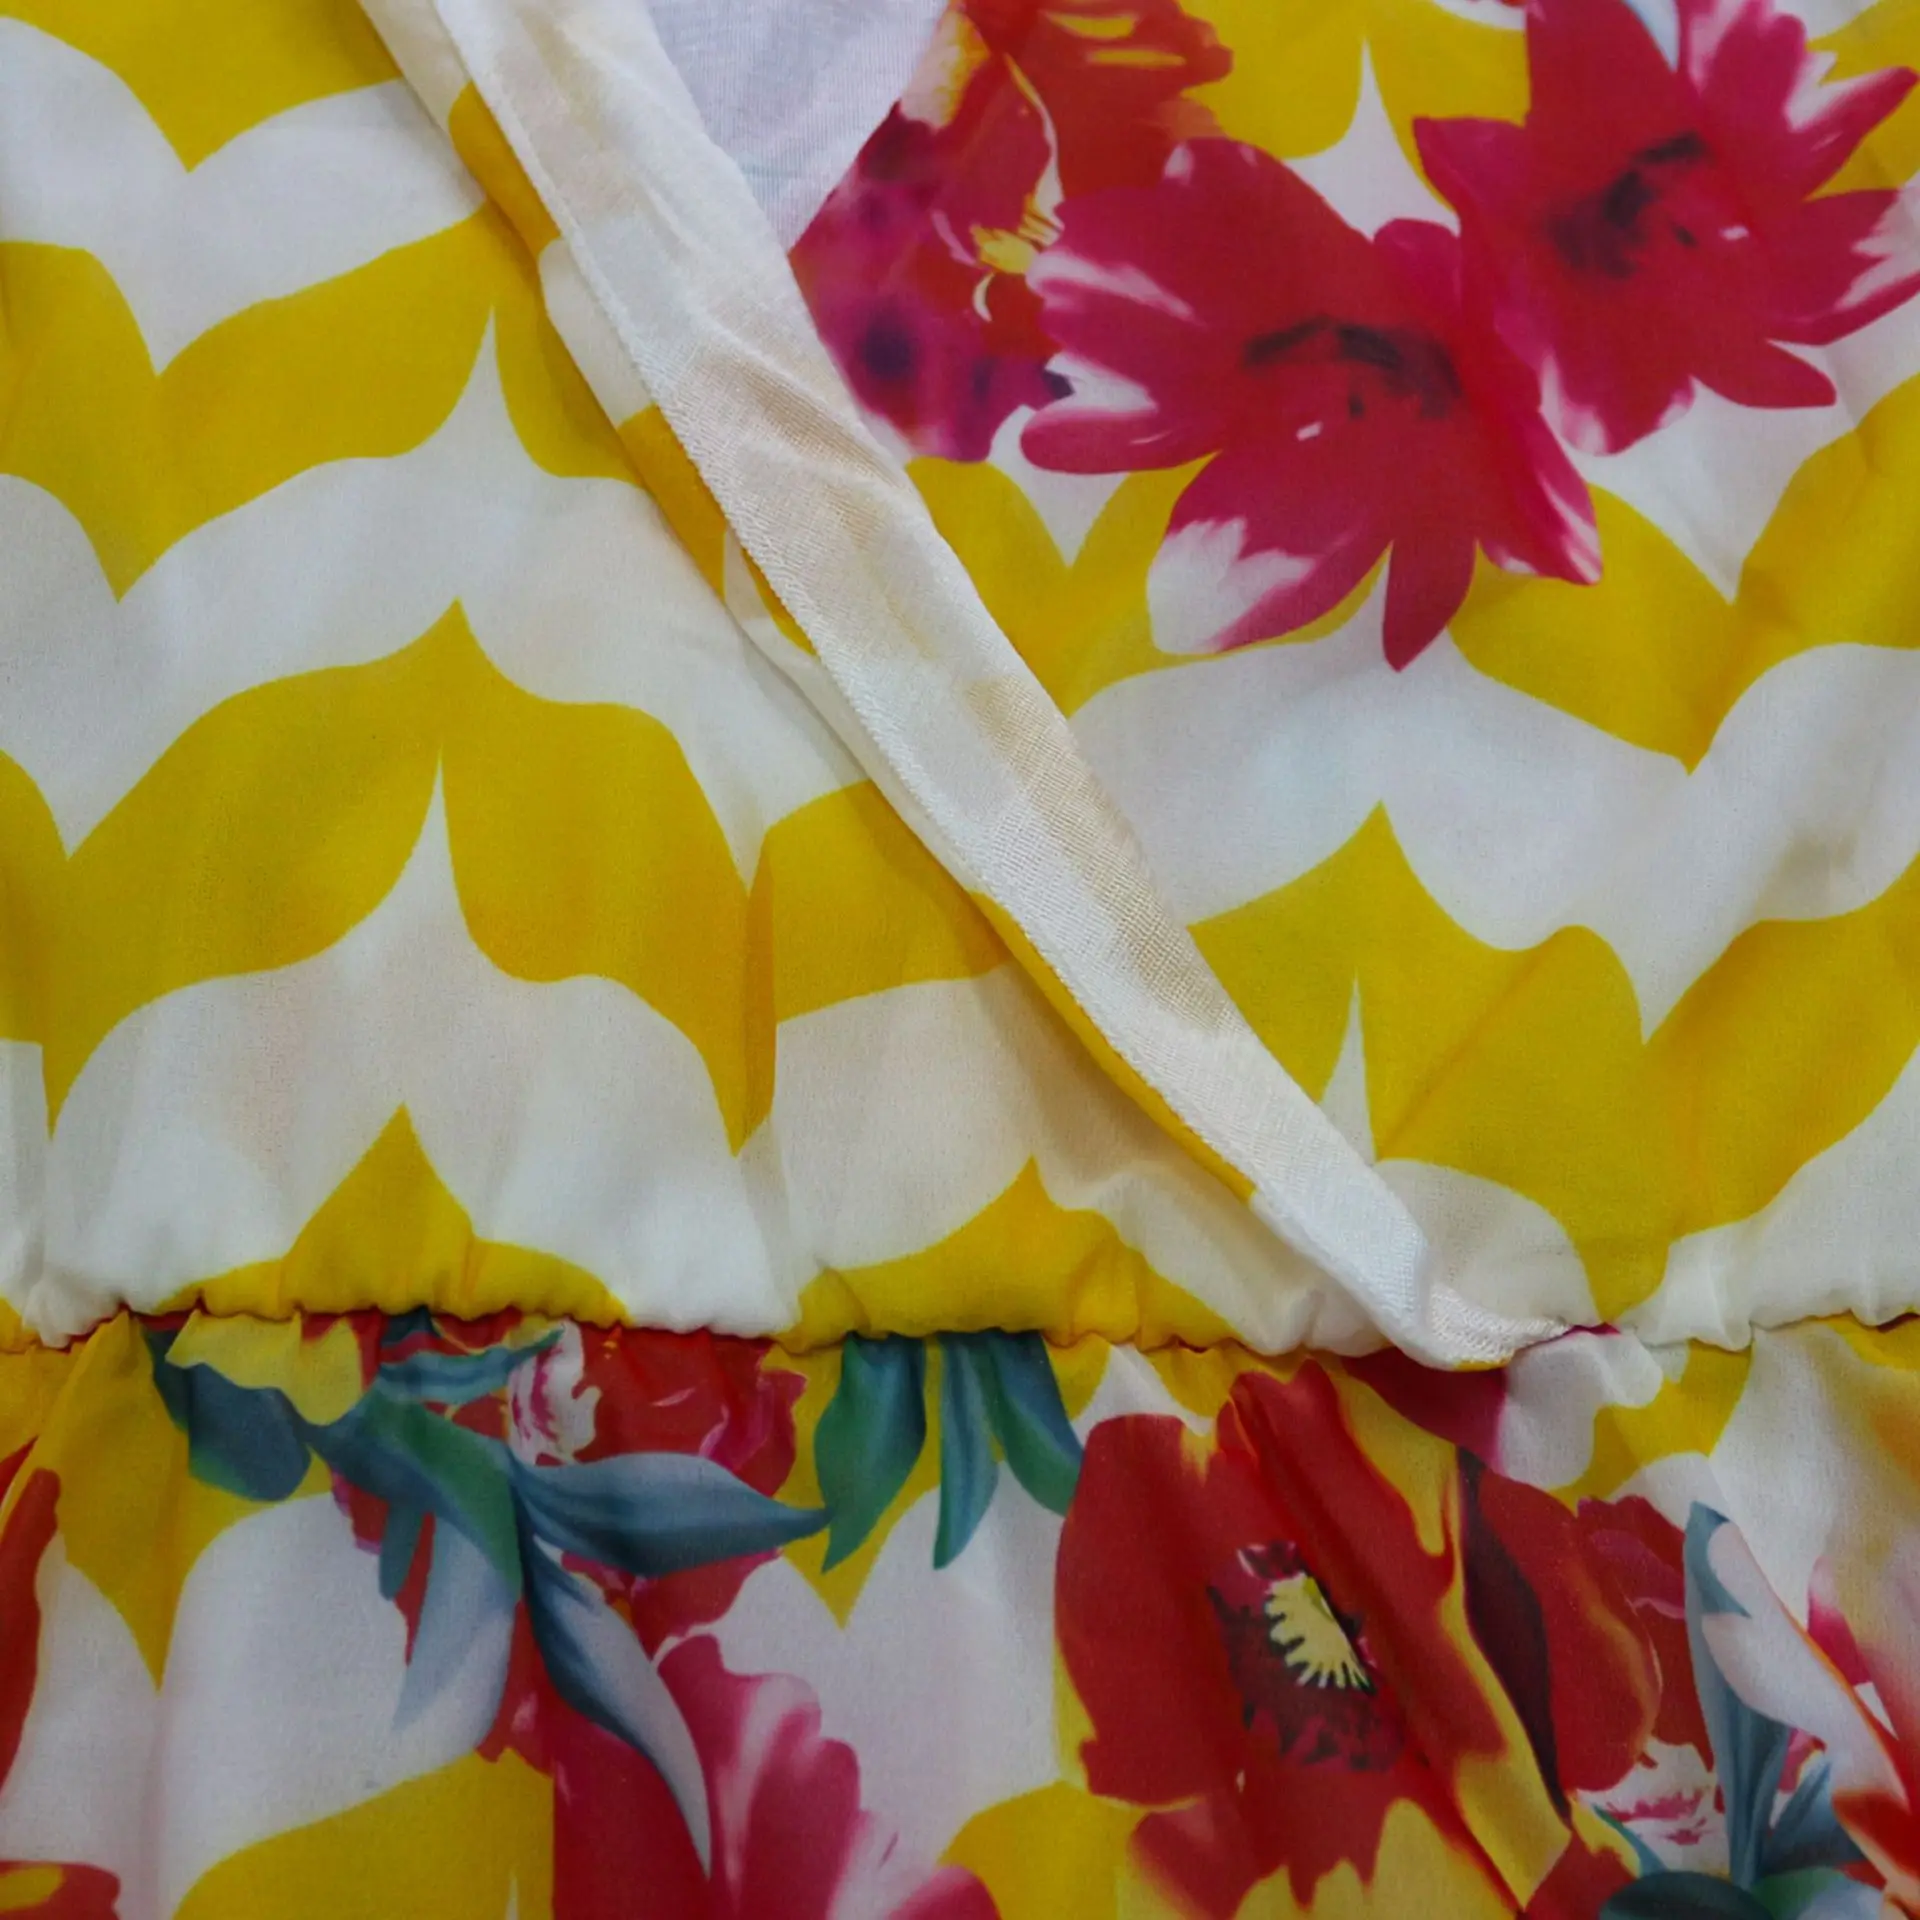 Летнее Женское Платье макси с цветочным принтом, шифоновое платье размера плюс в стиле бохо, элегантное пляжное длинное платье, платья больших размеров